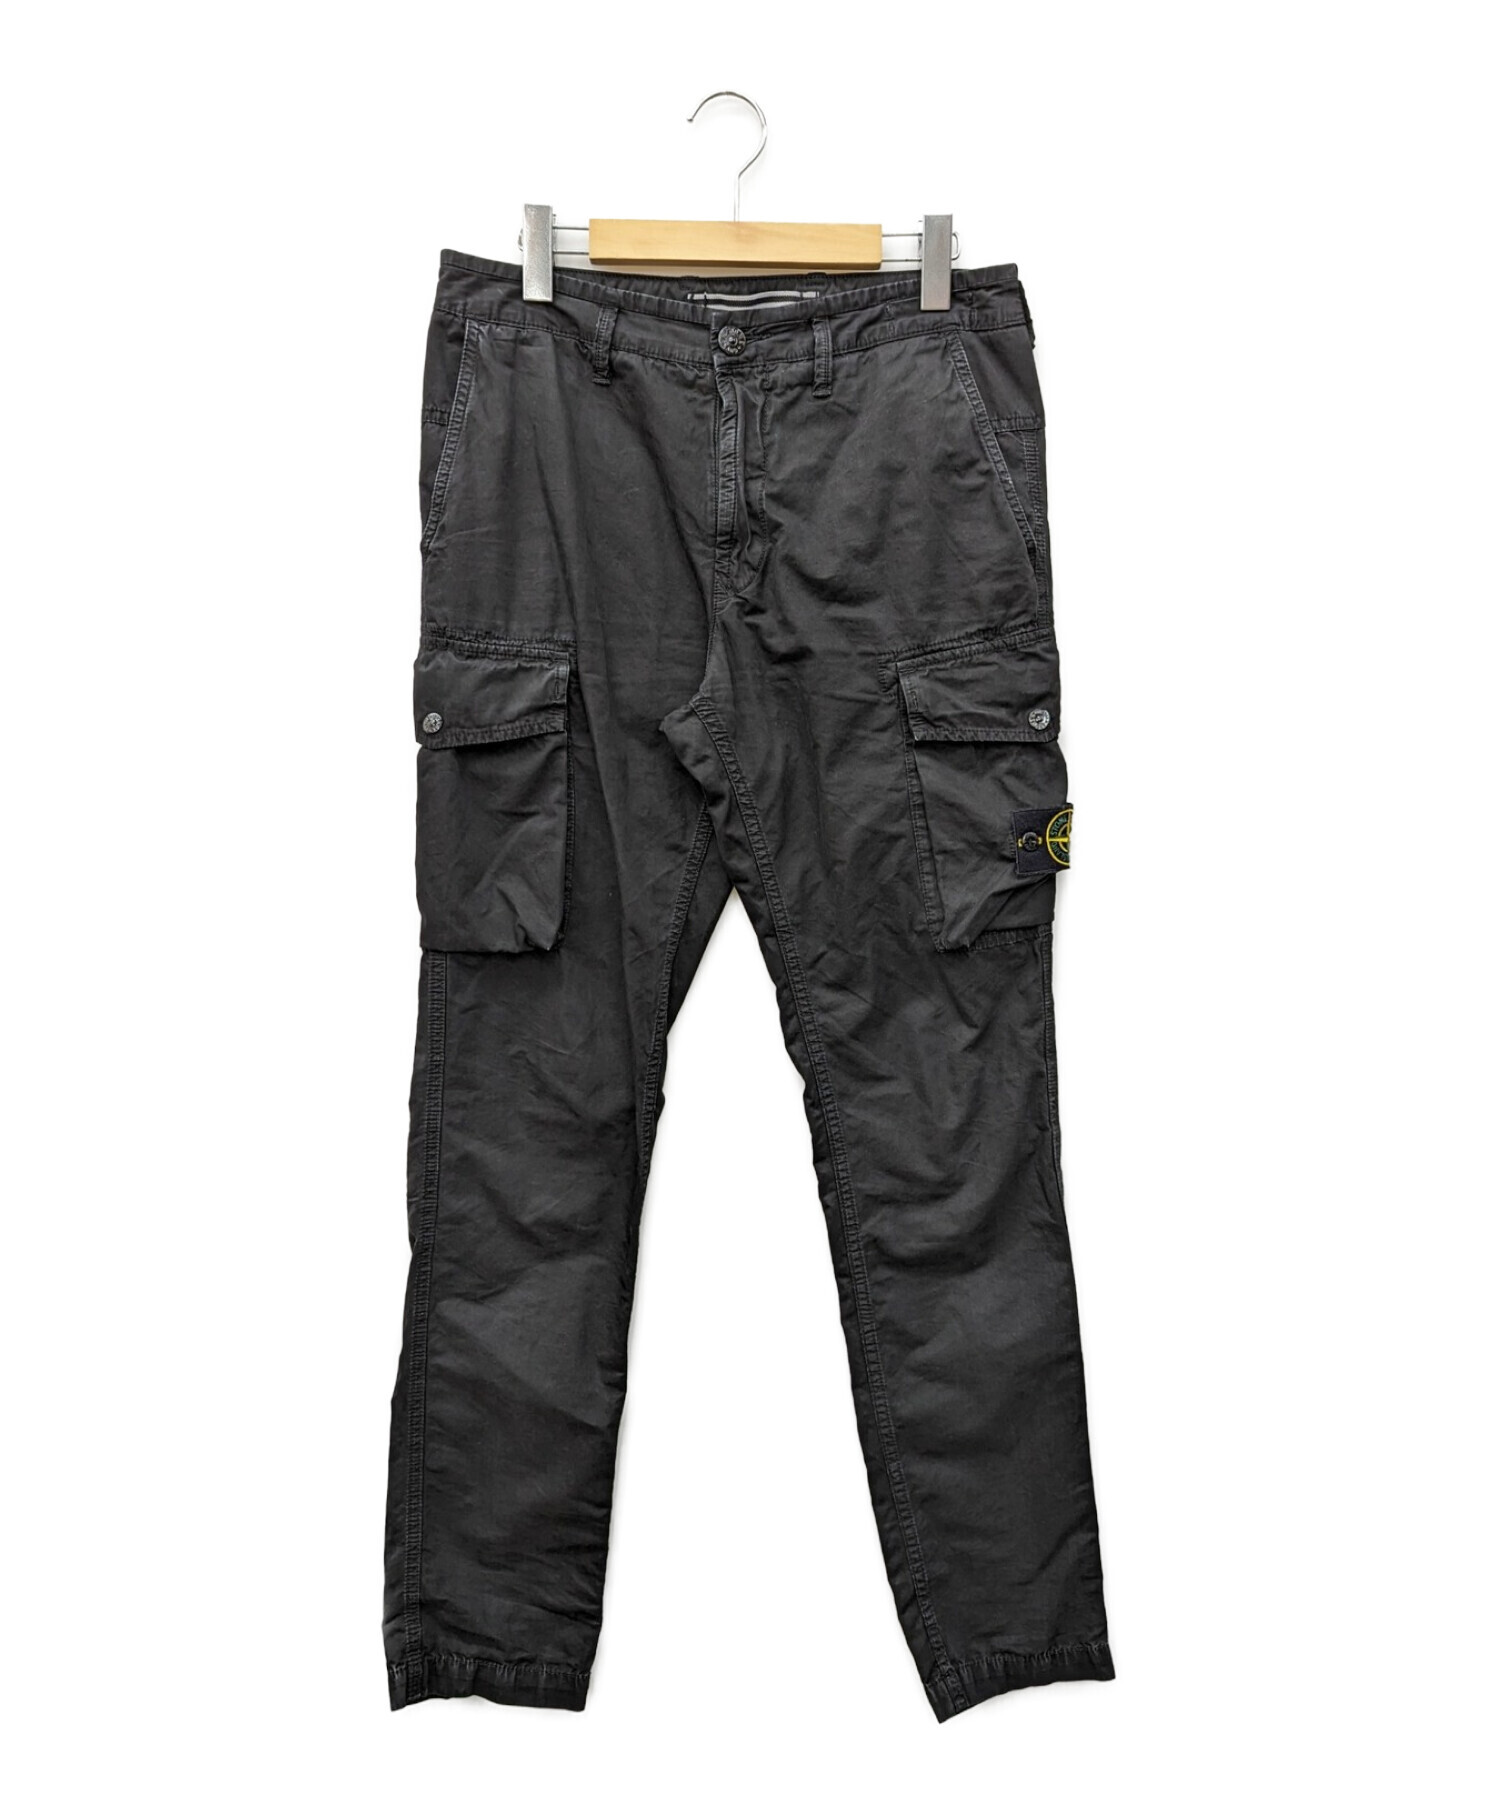 平置き40-41㎝Stone island old effect cargo pants W30